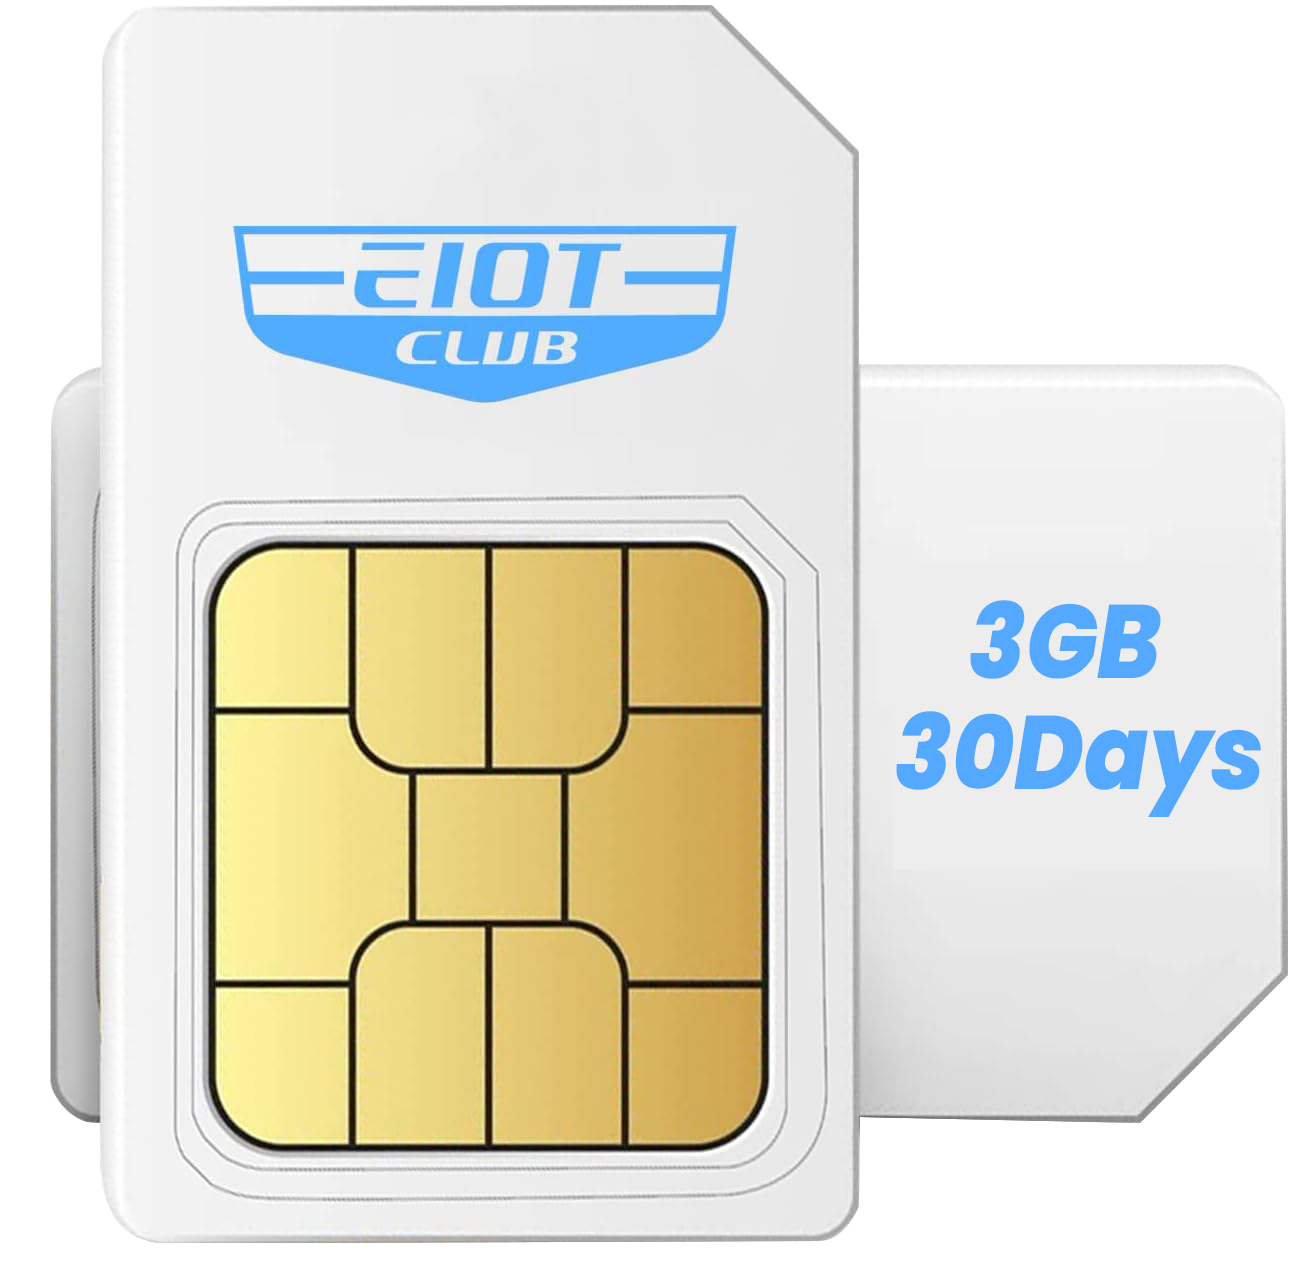 UBox EIOTCLUB SIM card data - 1 month